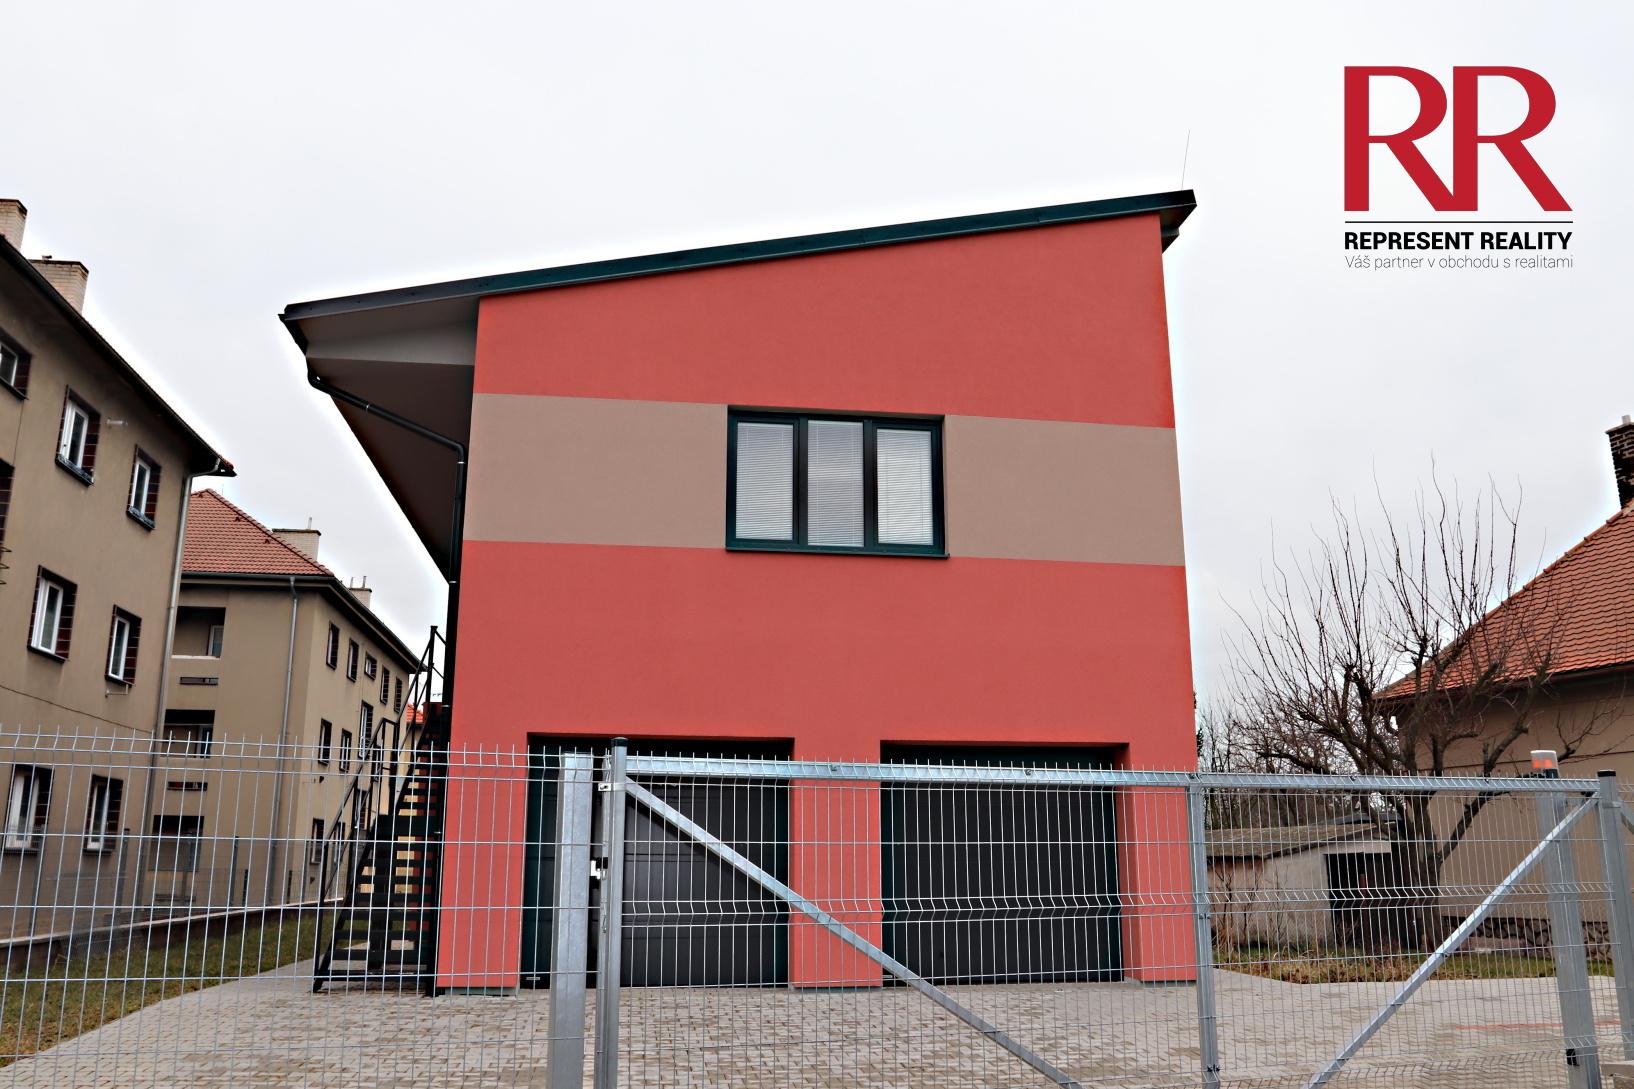 Prodej novostavby přízemí domu 2x 2+kk a 2+kk  se dvěma garážemi a menší zahrádkou  v Rokycanech, obrázek č. 2